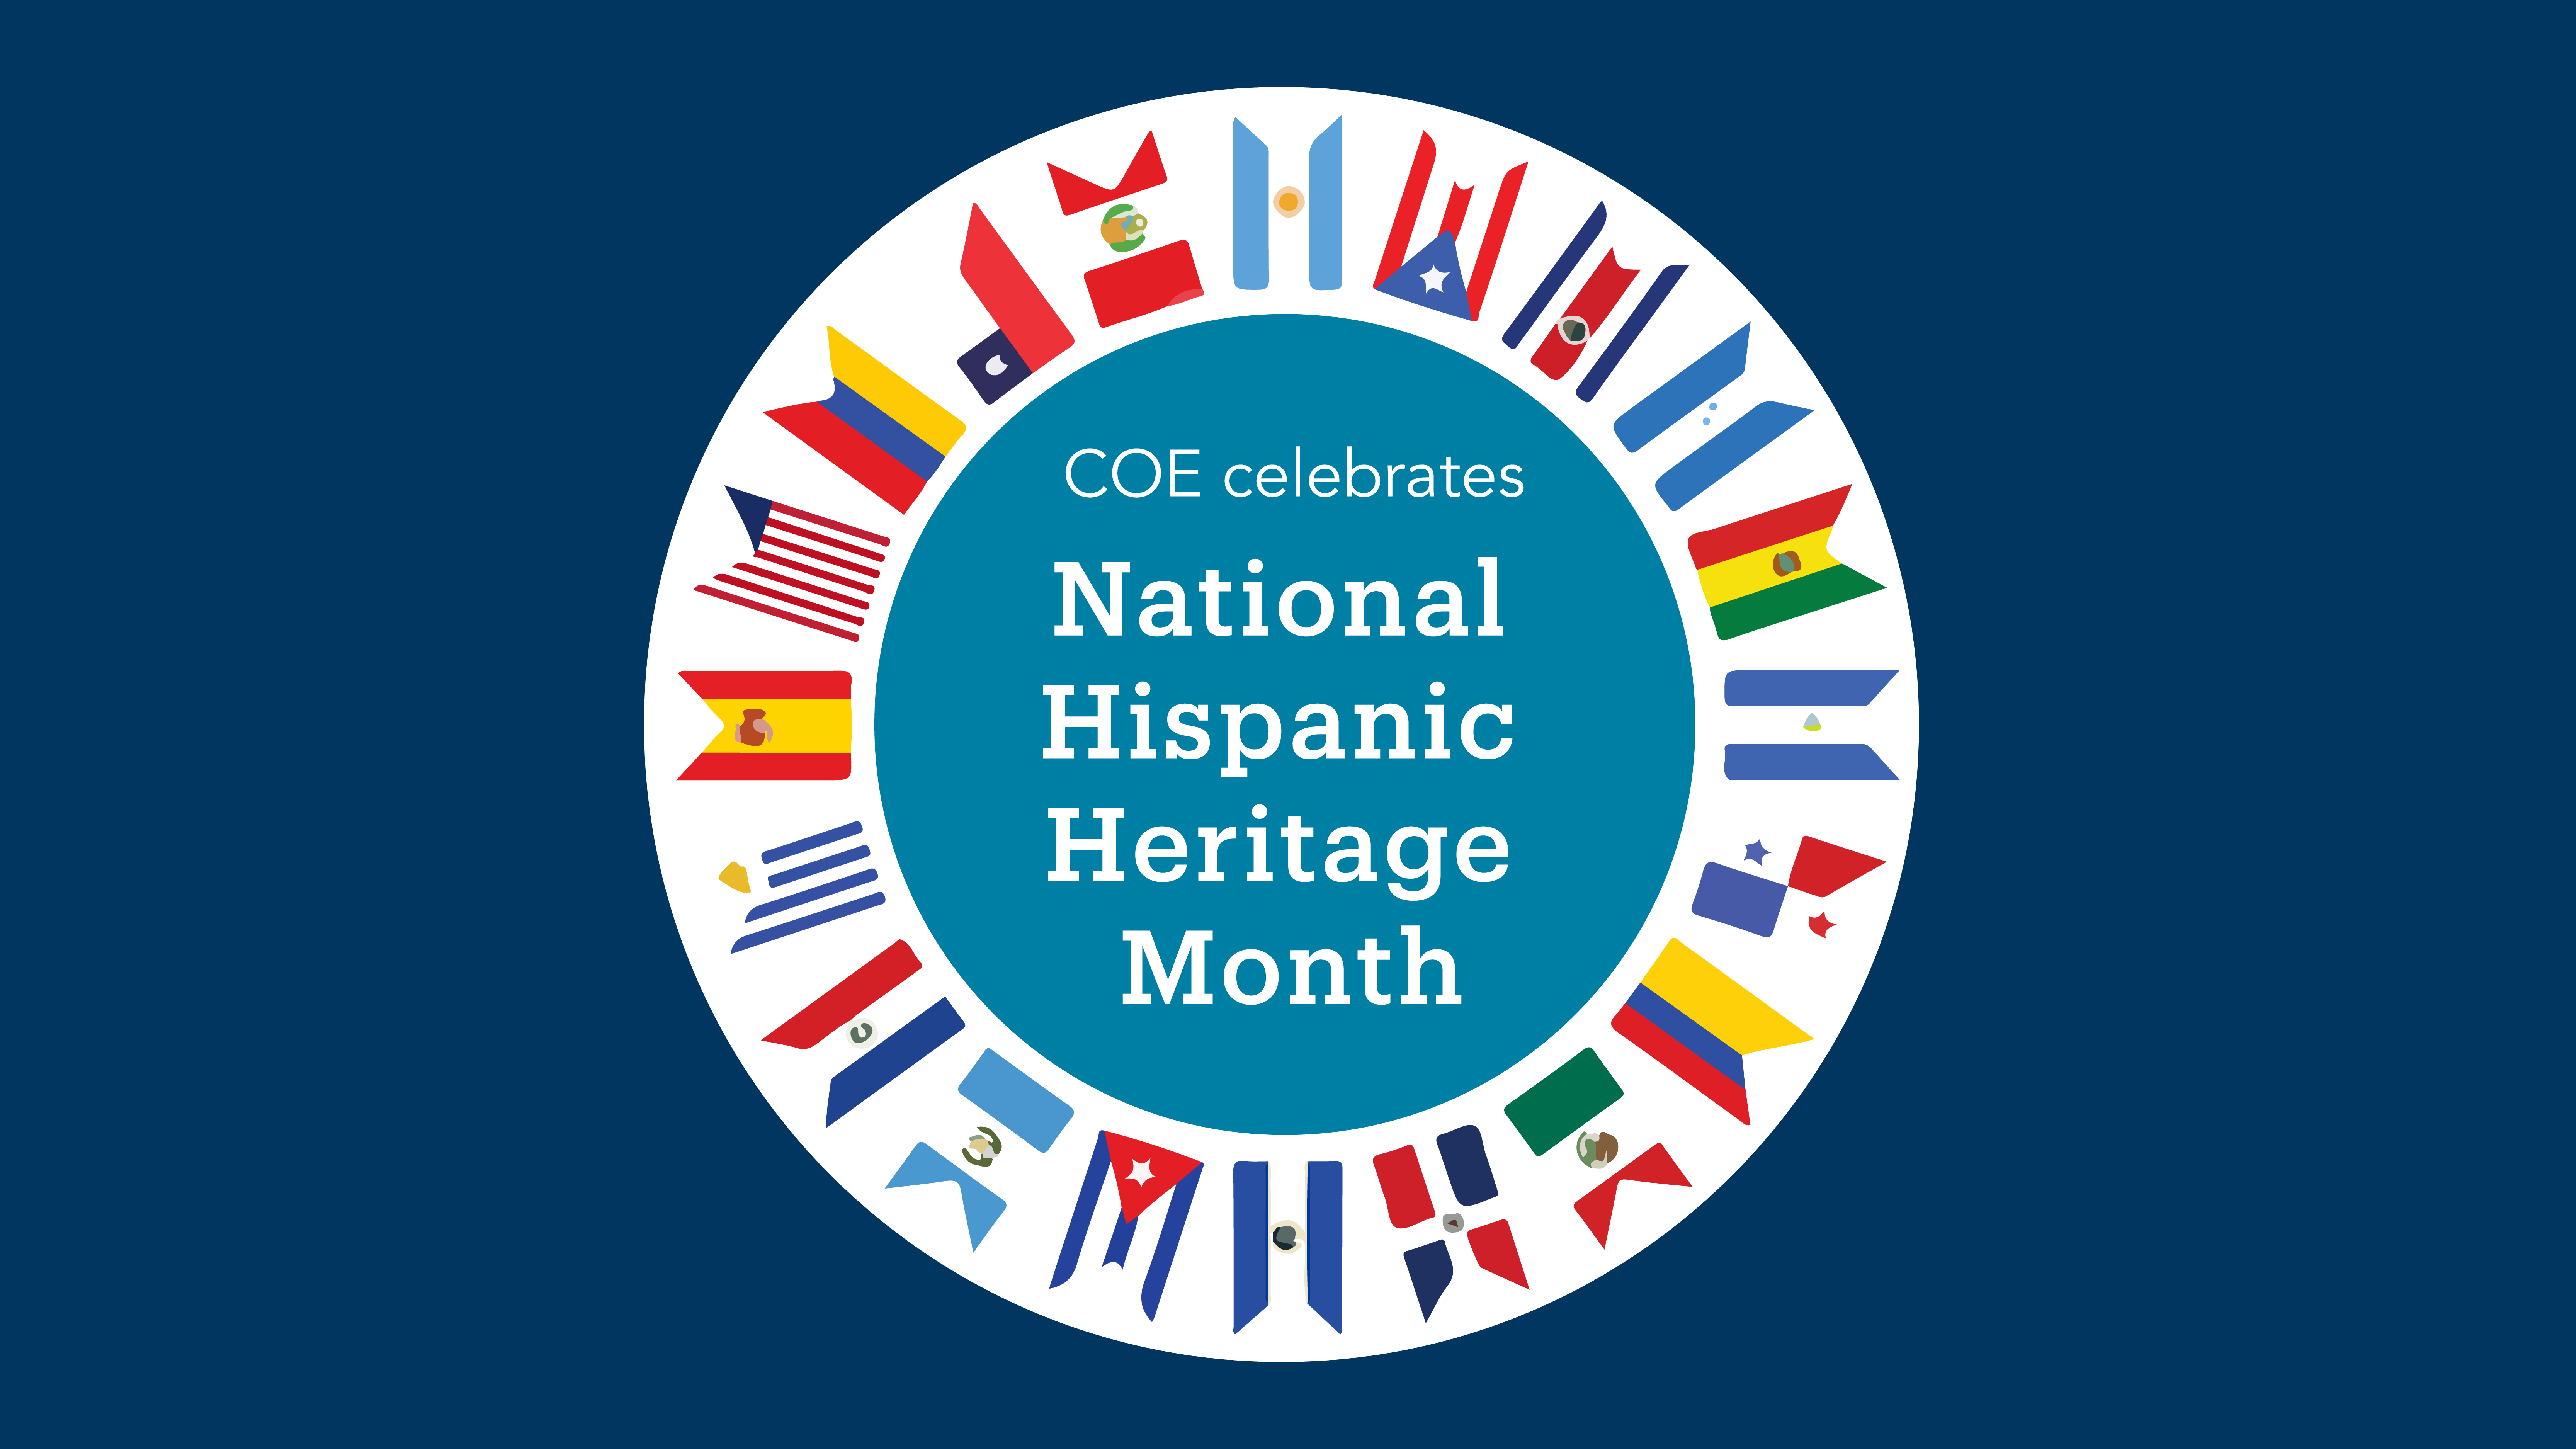 COE celebrates National Hispanic Heritage Month